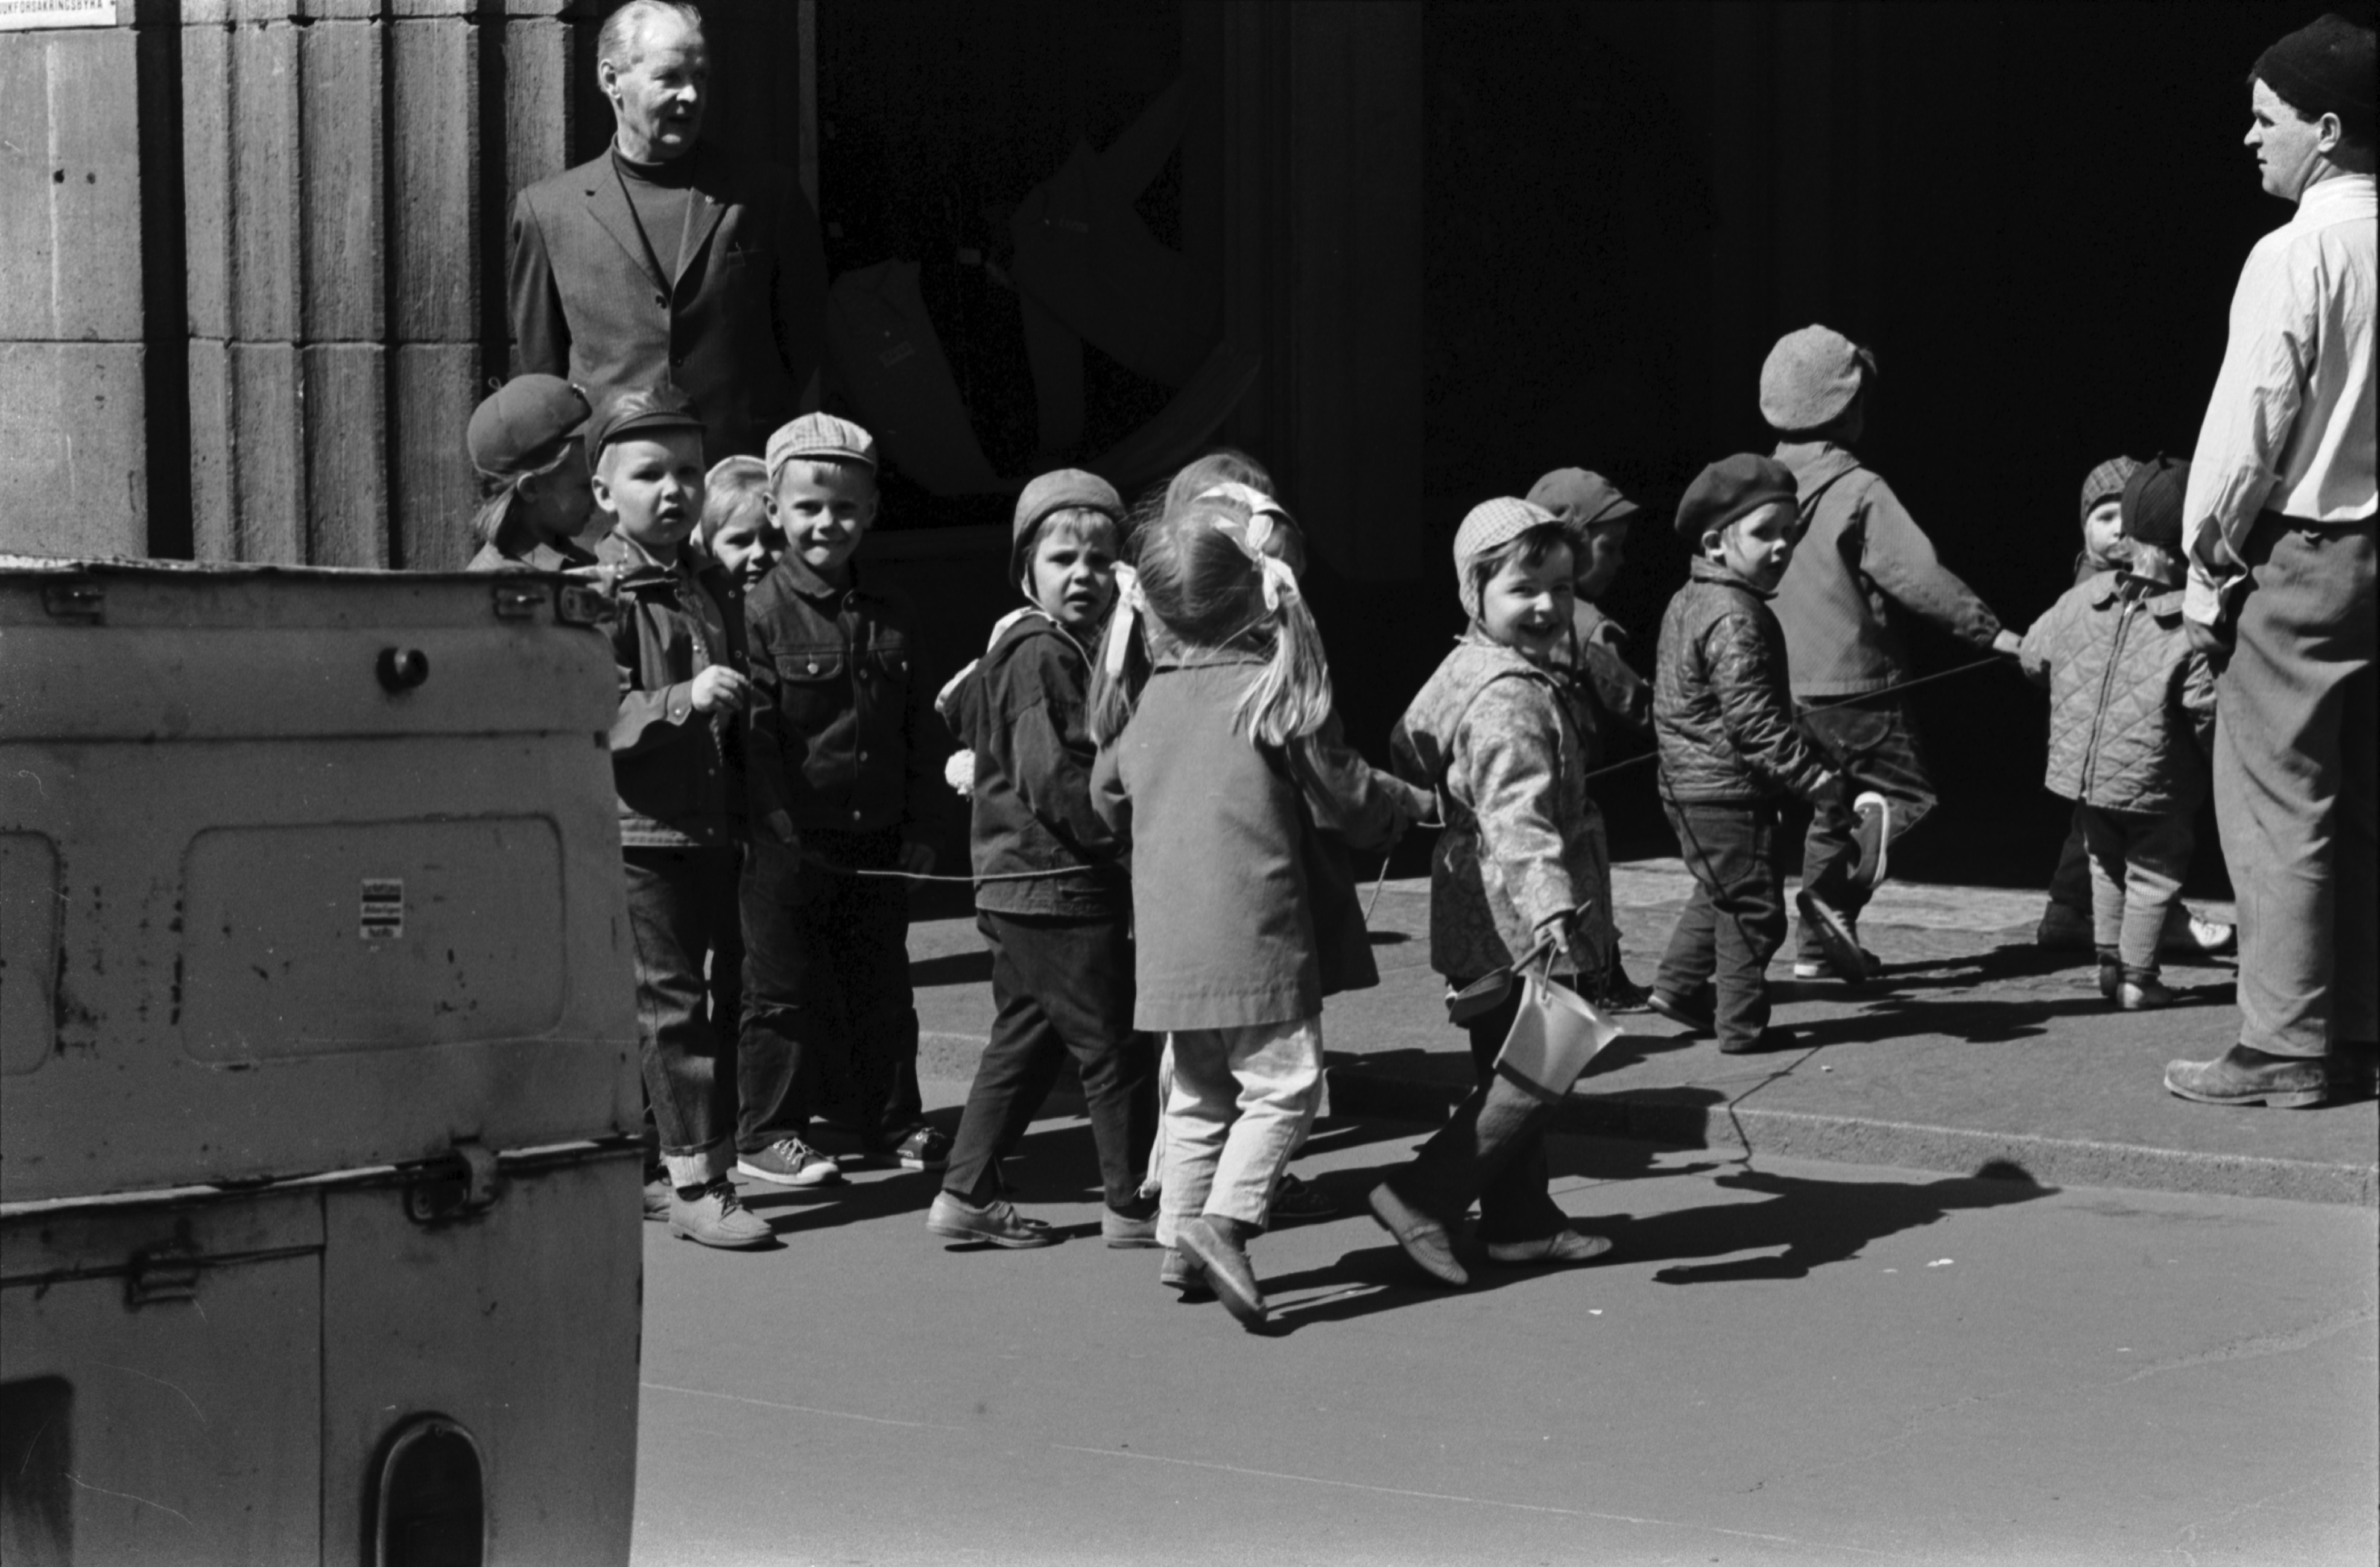 Hämeentie 8. Tokoinrannan puistosta tulevat lapset jonossa narusta kiinni pitäen menossa lastentarhan ovesta sisään.